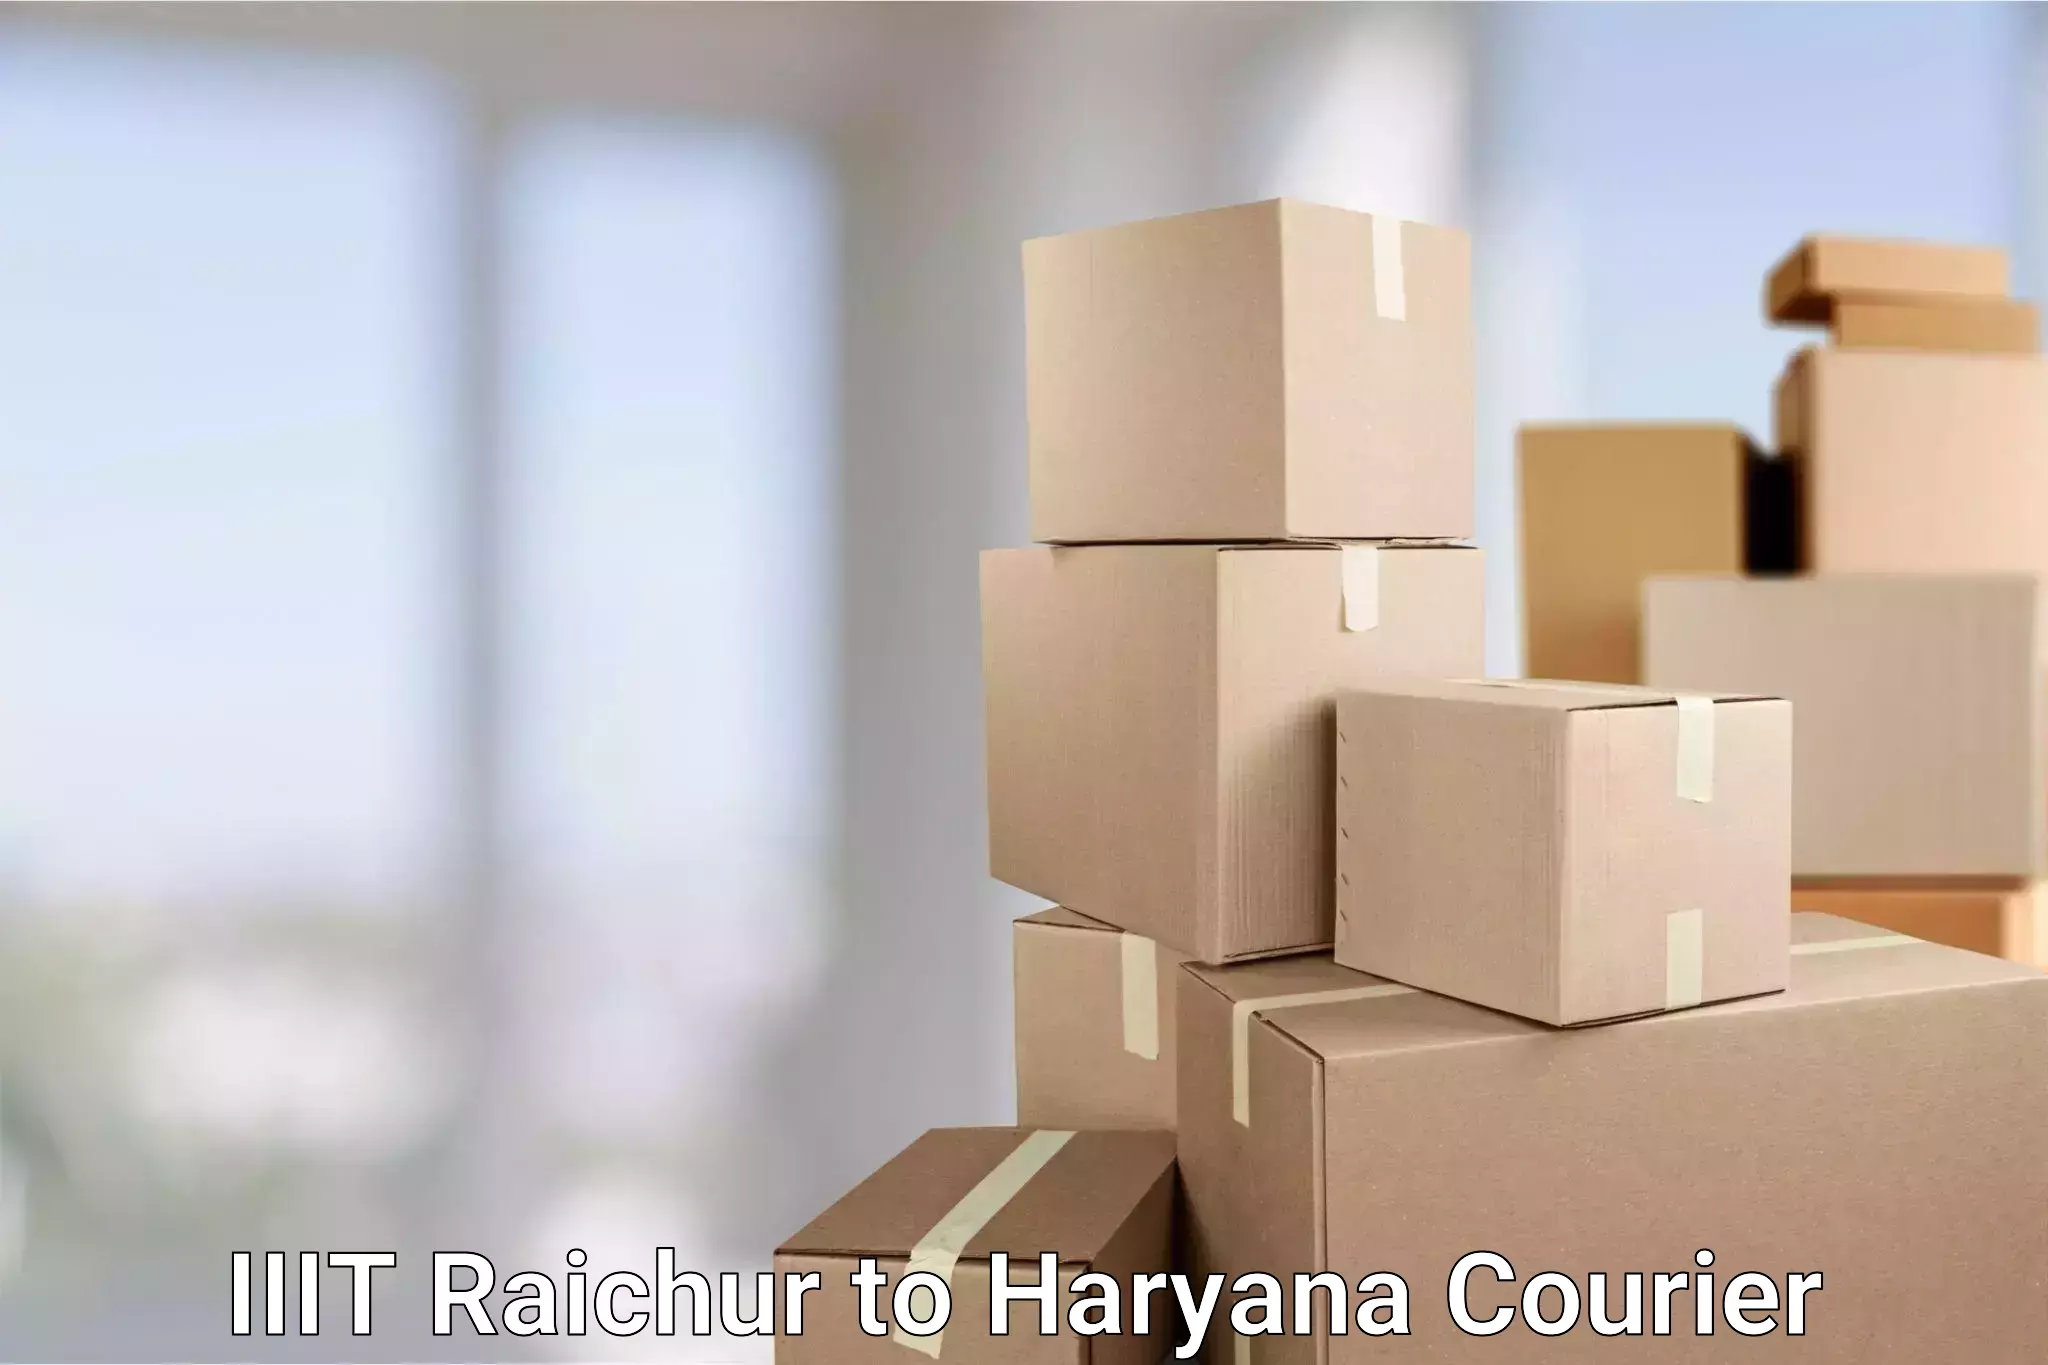 Flexible delivery scheduling IIIT Raichur to Haryana